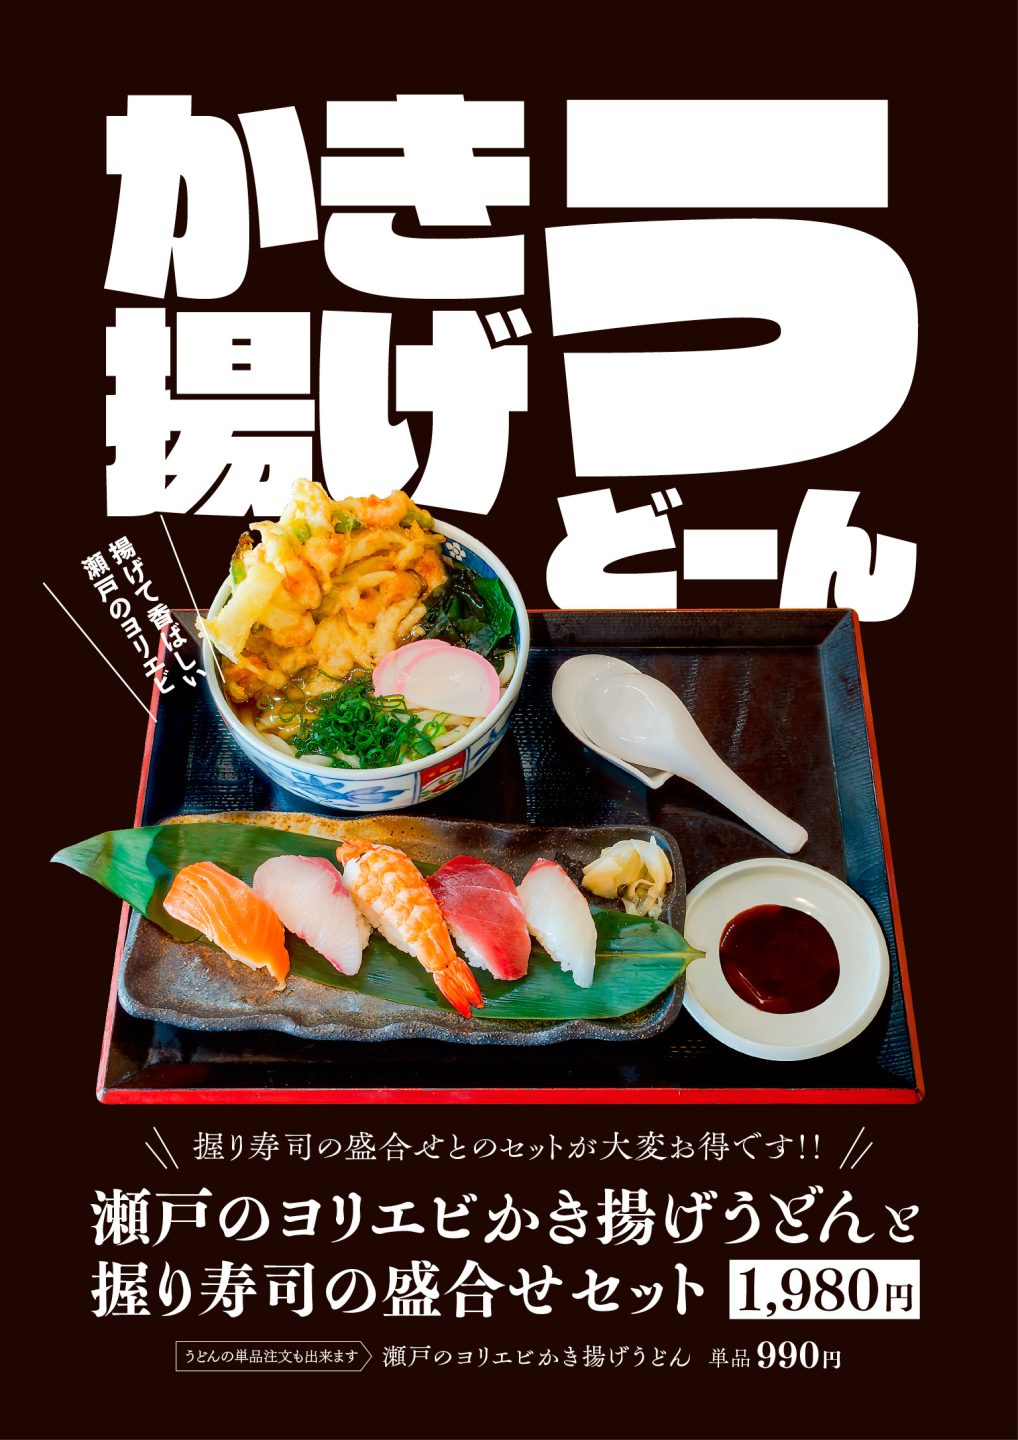 力寿司「瀬戸のヨリエビかき揚げうどんと握り寿司の盛合せセット」メニュー表